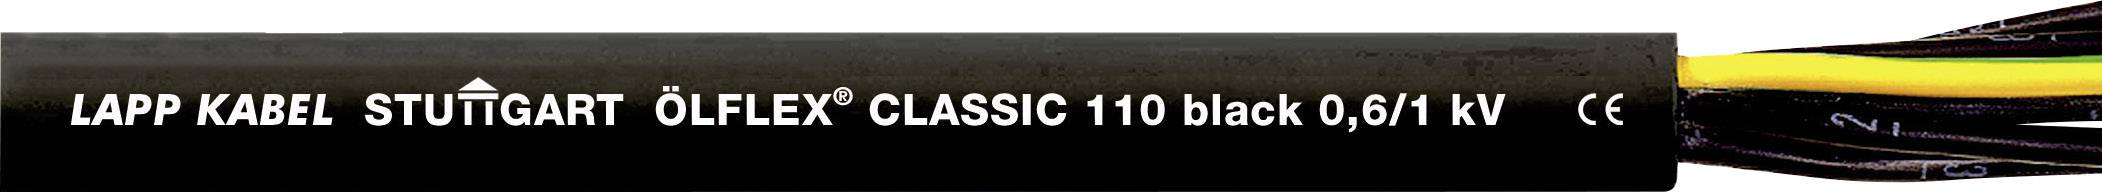 LAPP ÖLFLEX CLASSIC BLACK 110 Steuerleitung 4 G 0.75 mm² Schwarz 1120235-1 Meterware